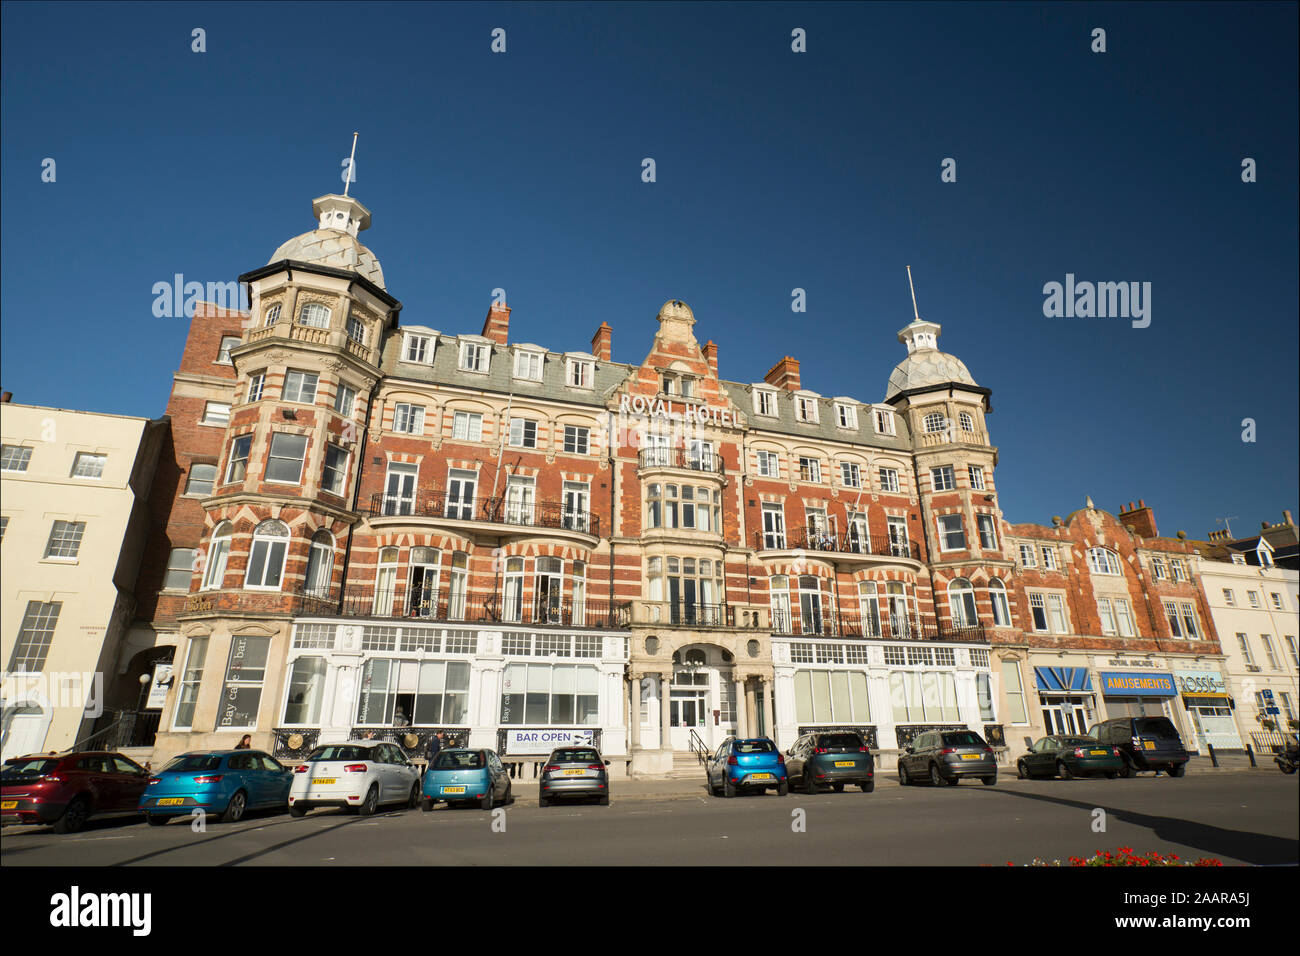 L'Hôtel Royal sur le front de mer de Weymouth. Dorset England UK GB. Banque D'Images